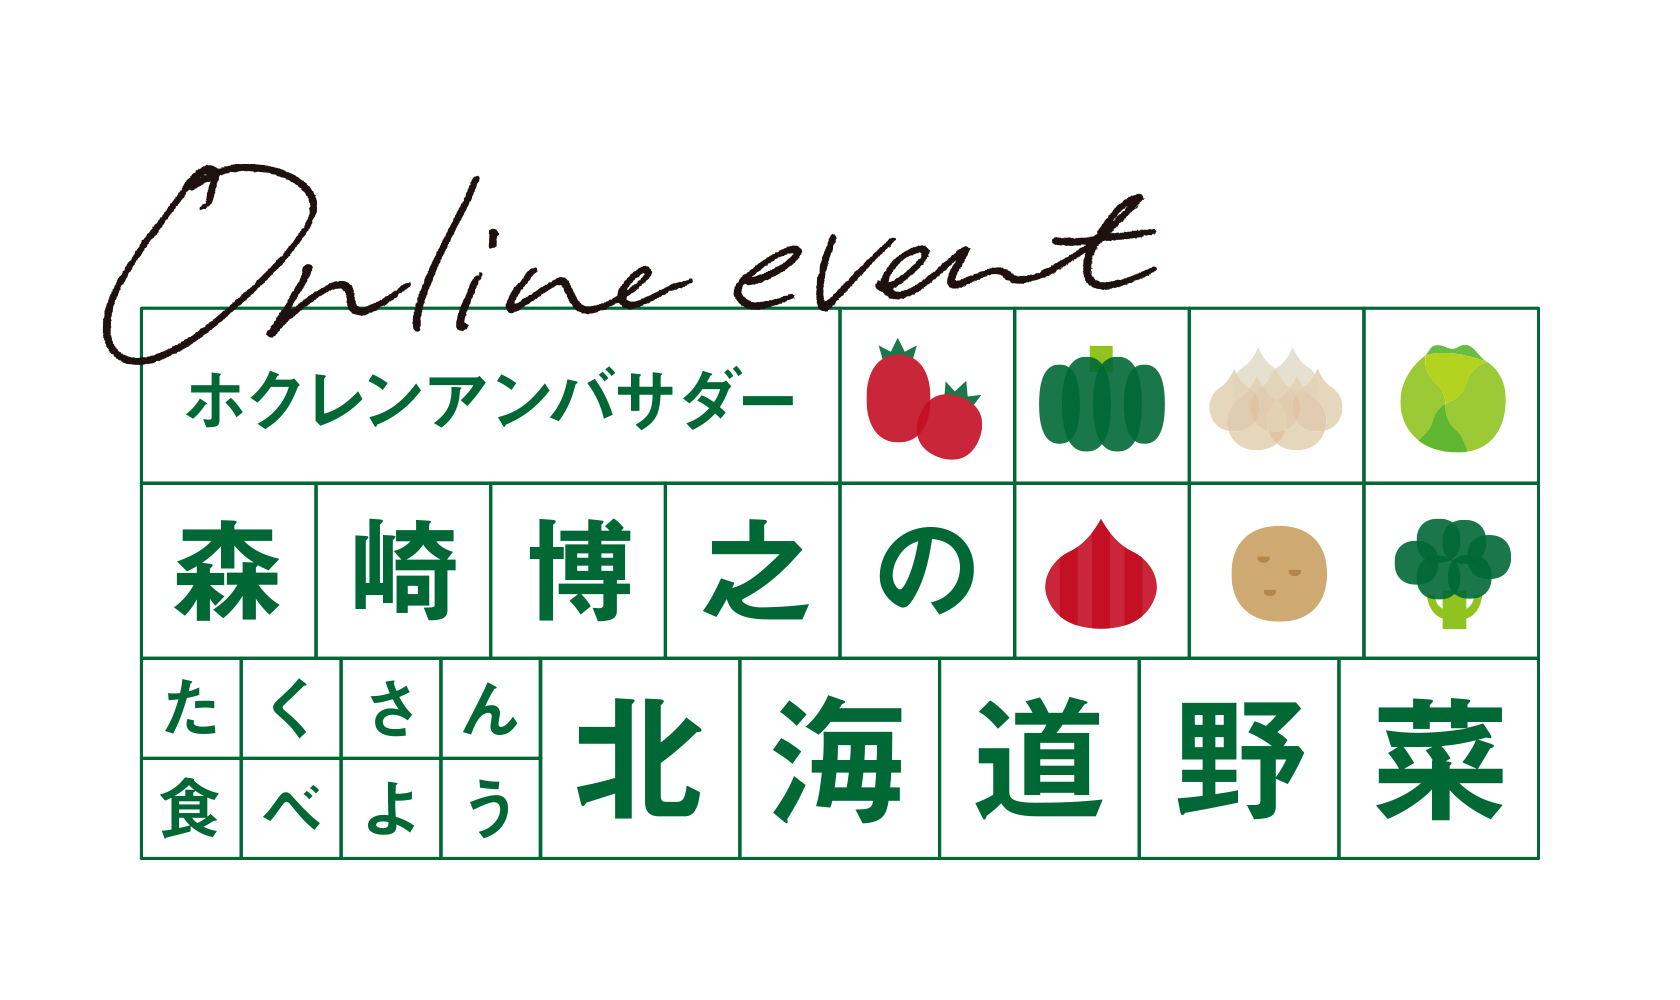 ホクレンアンバサダー・森崎博之のたくさん食べよう北海道野菜